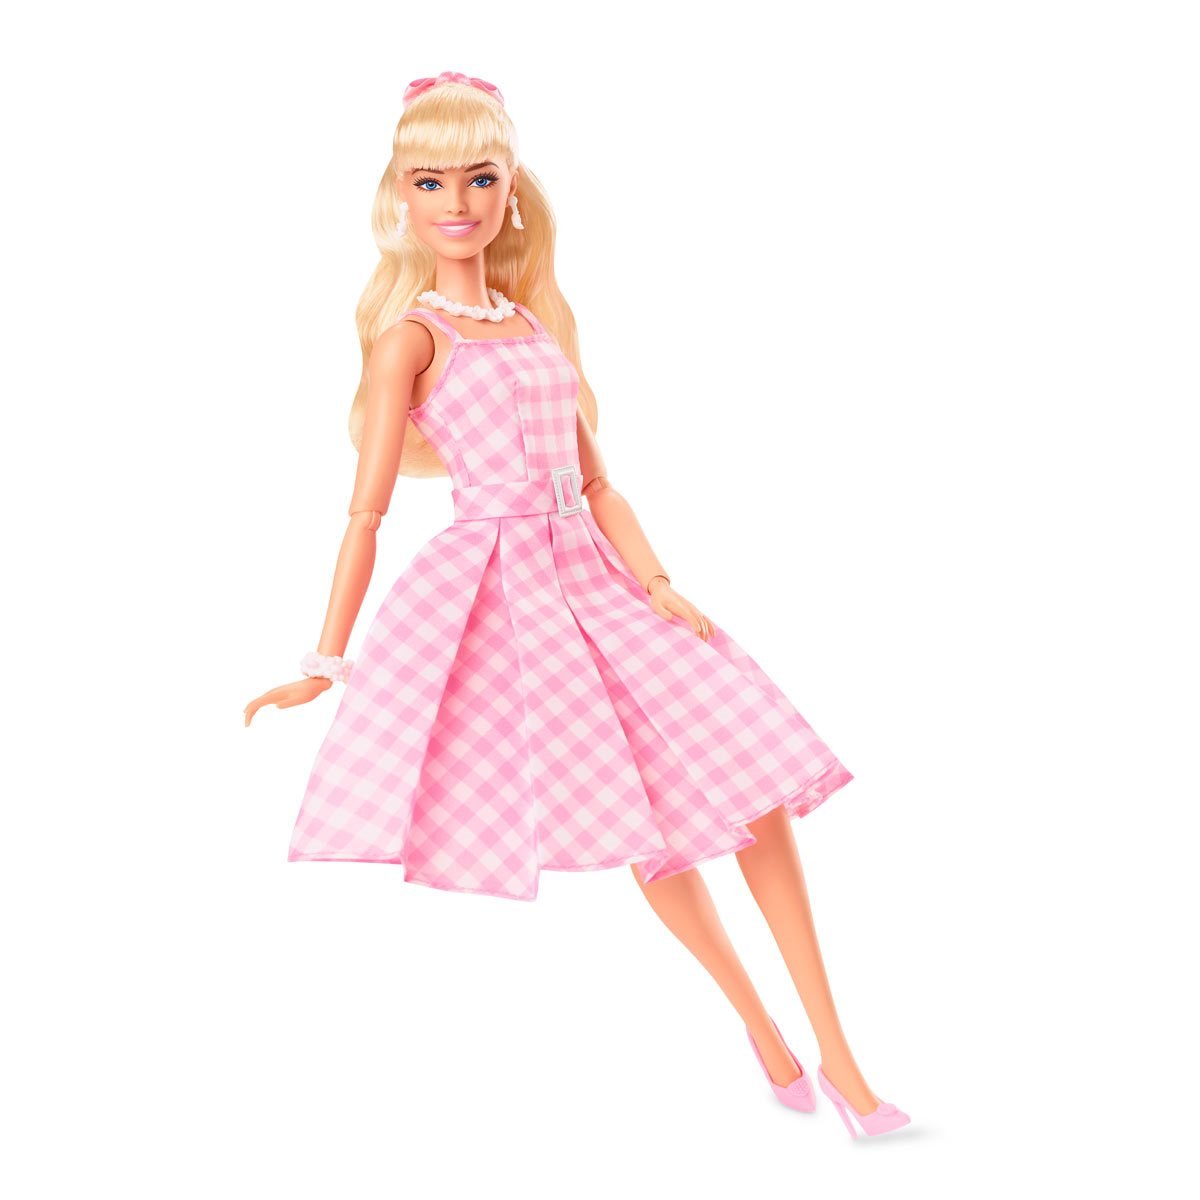 Barbie in Pink Gingham Dress: Barbie The Movie 23-HPJ96 – Barbie